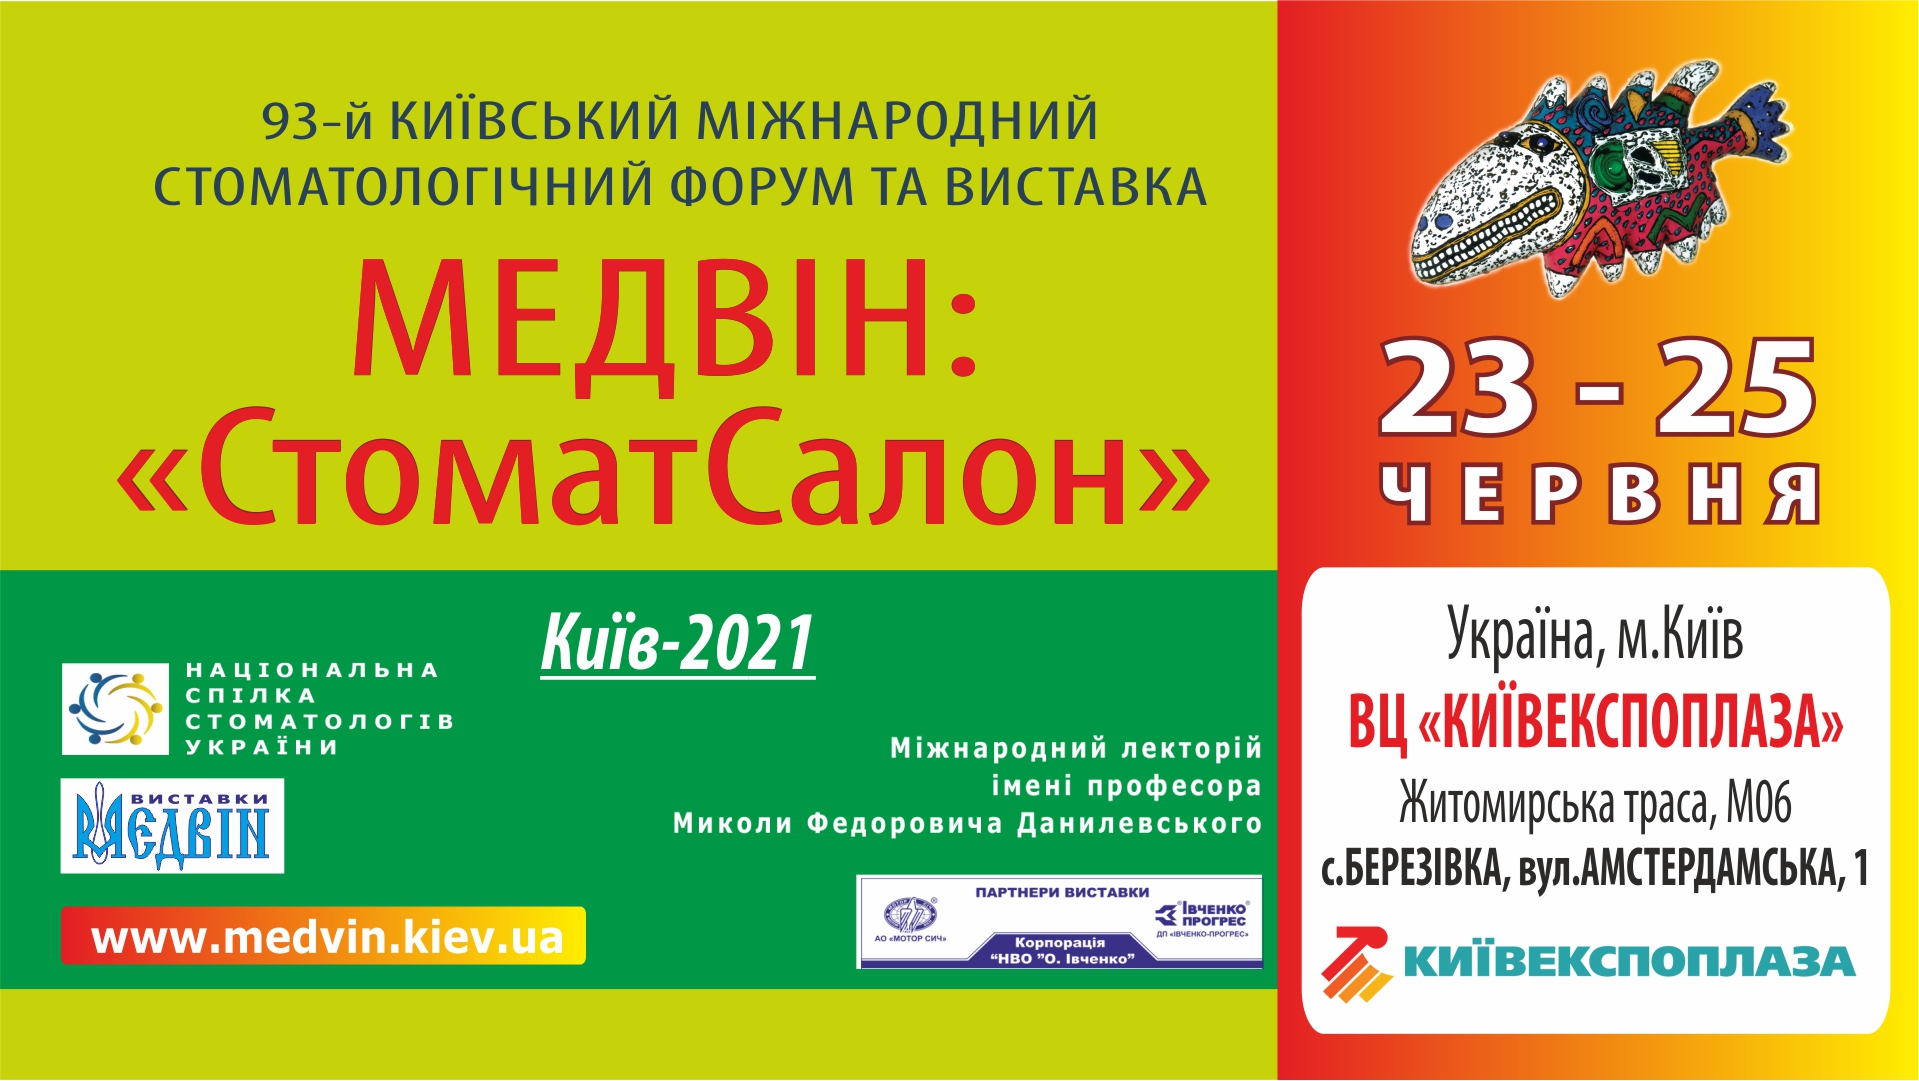 Квиток на виставку "МЕДВІН: СтоматСалон" - КИЇВ, 23-25 червня 2021